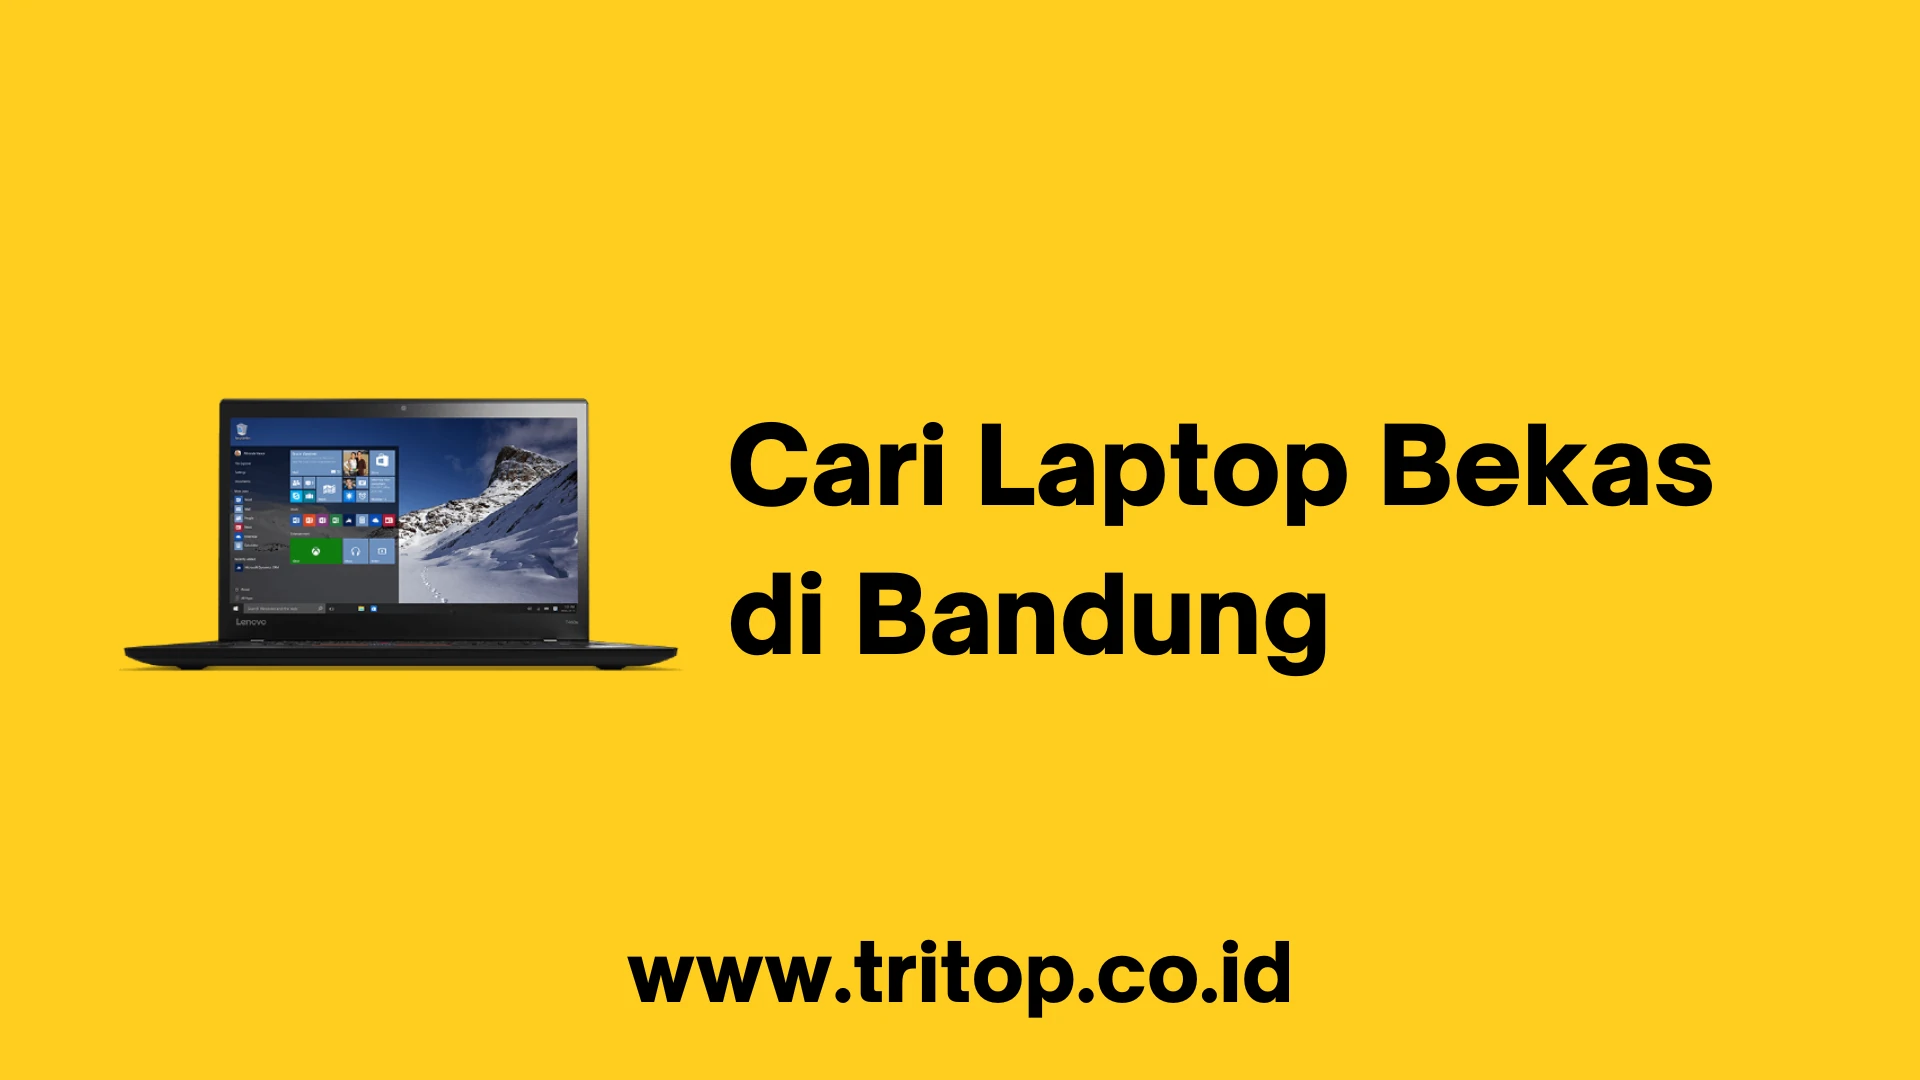 Cari Laptop Bekas di Bandung